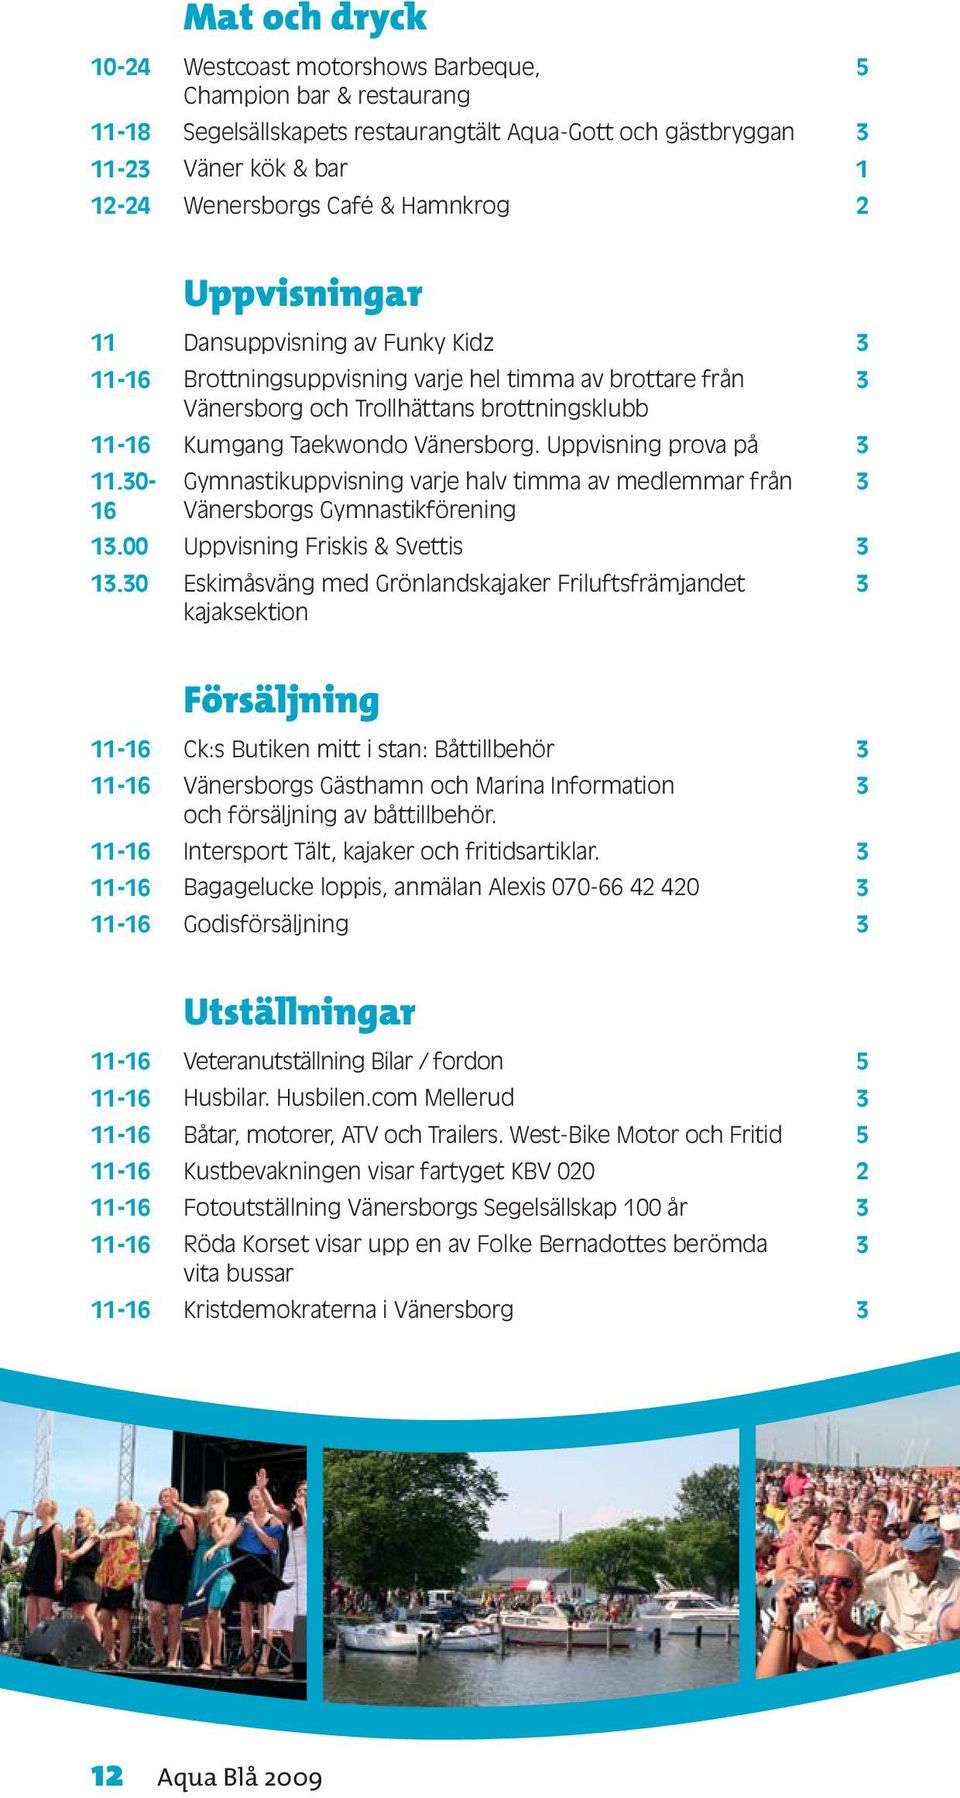 Uppvisning prova på 11.0- Gymnastikuppvisning varje halv timma av medlemmar från 16 Vänersborgs Gymnastikförening 1.00 Uppvisning Friskis & Svettis 1.